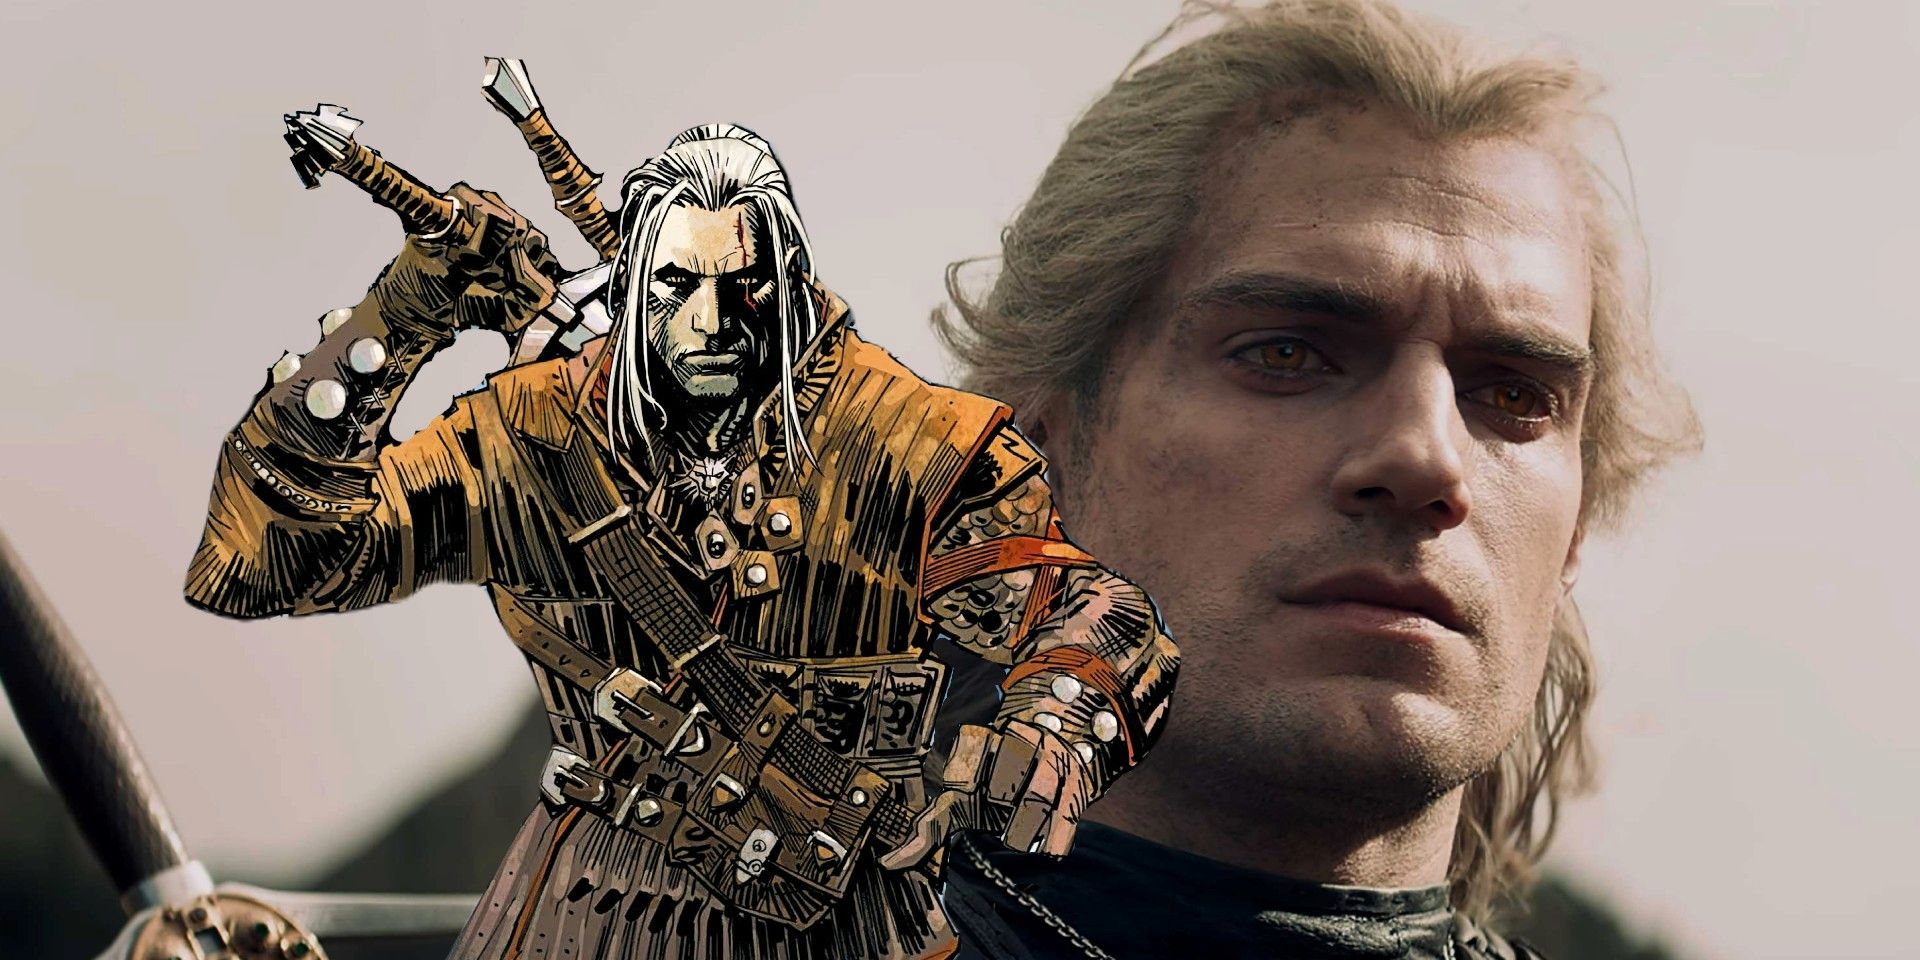 Los fanáticos de The Witcher que quieren más Geralt necesitan leer las novelas gráficas